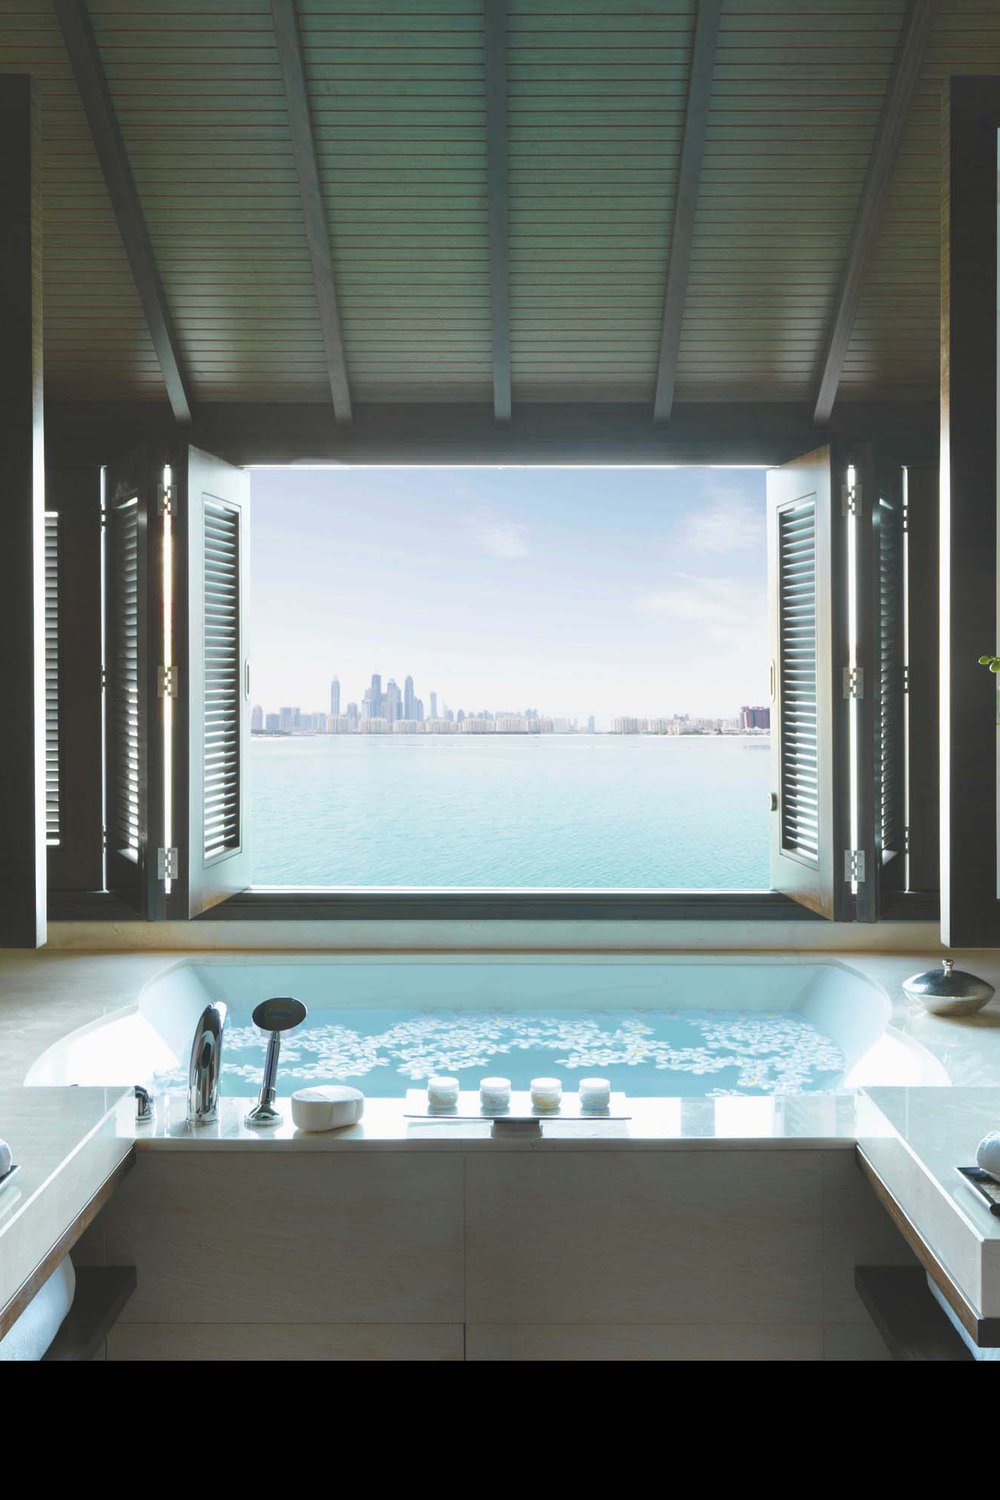 Dubai’s very own luxury beachfront retreat